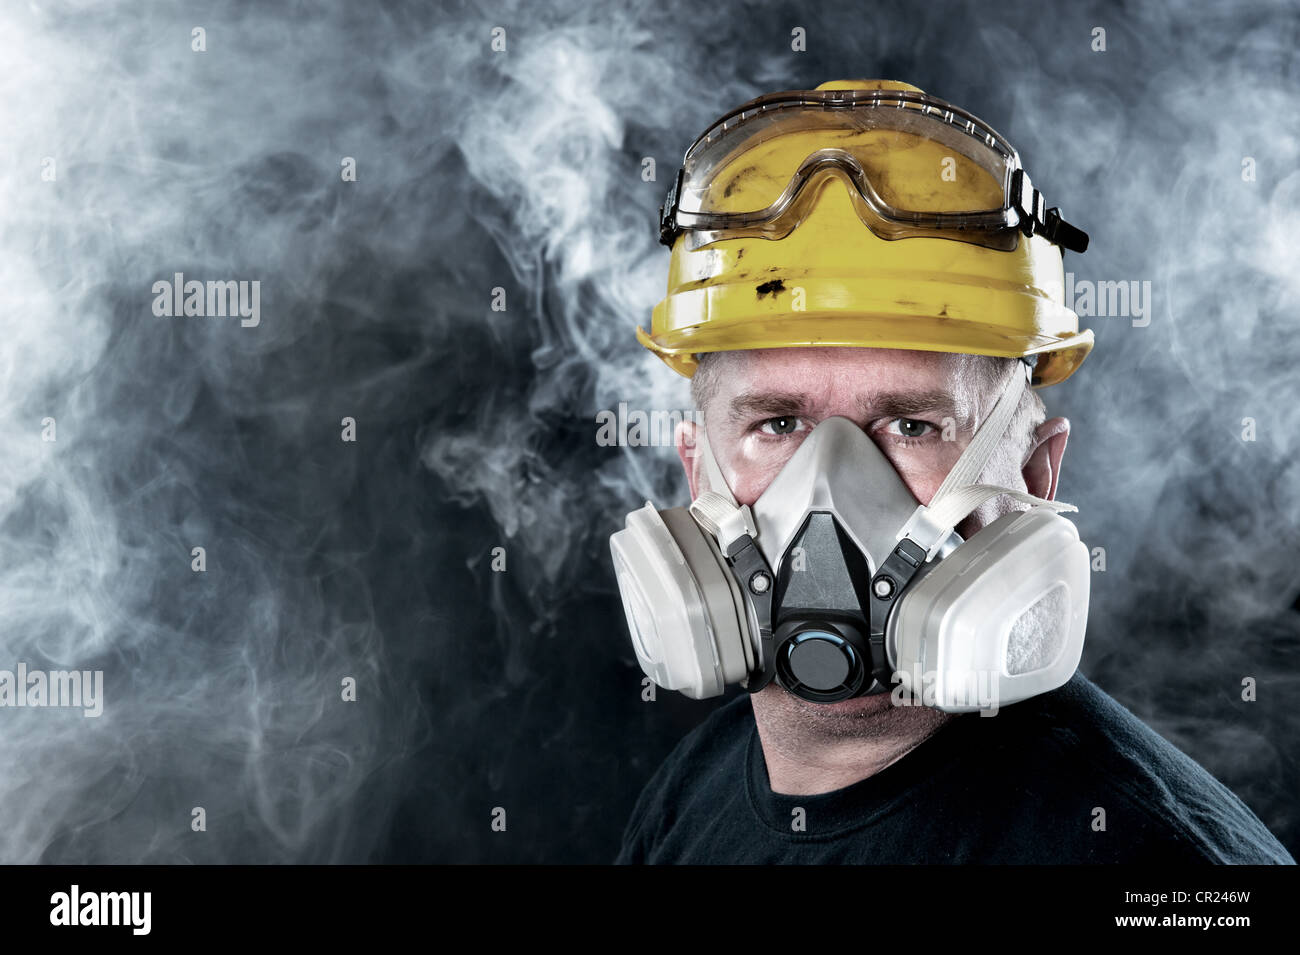 Un trabajador de rescate lleva un respirador en el humo, atmósfera tóxica. Imagen muestra la importancia de la protección de seguridad y disponibilidad. Foto de stock